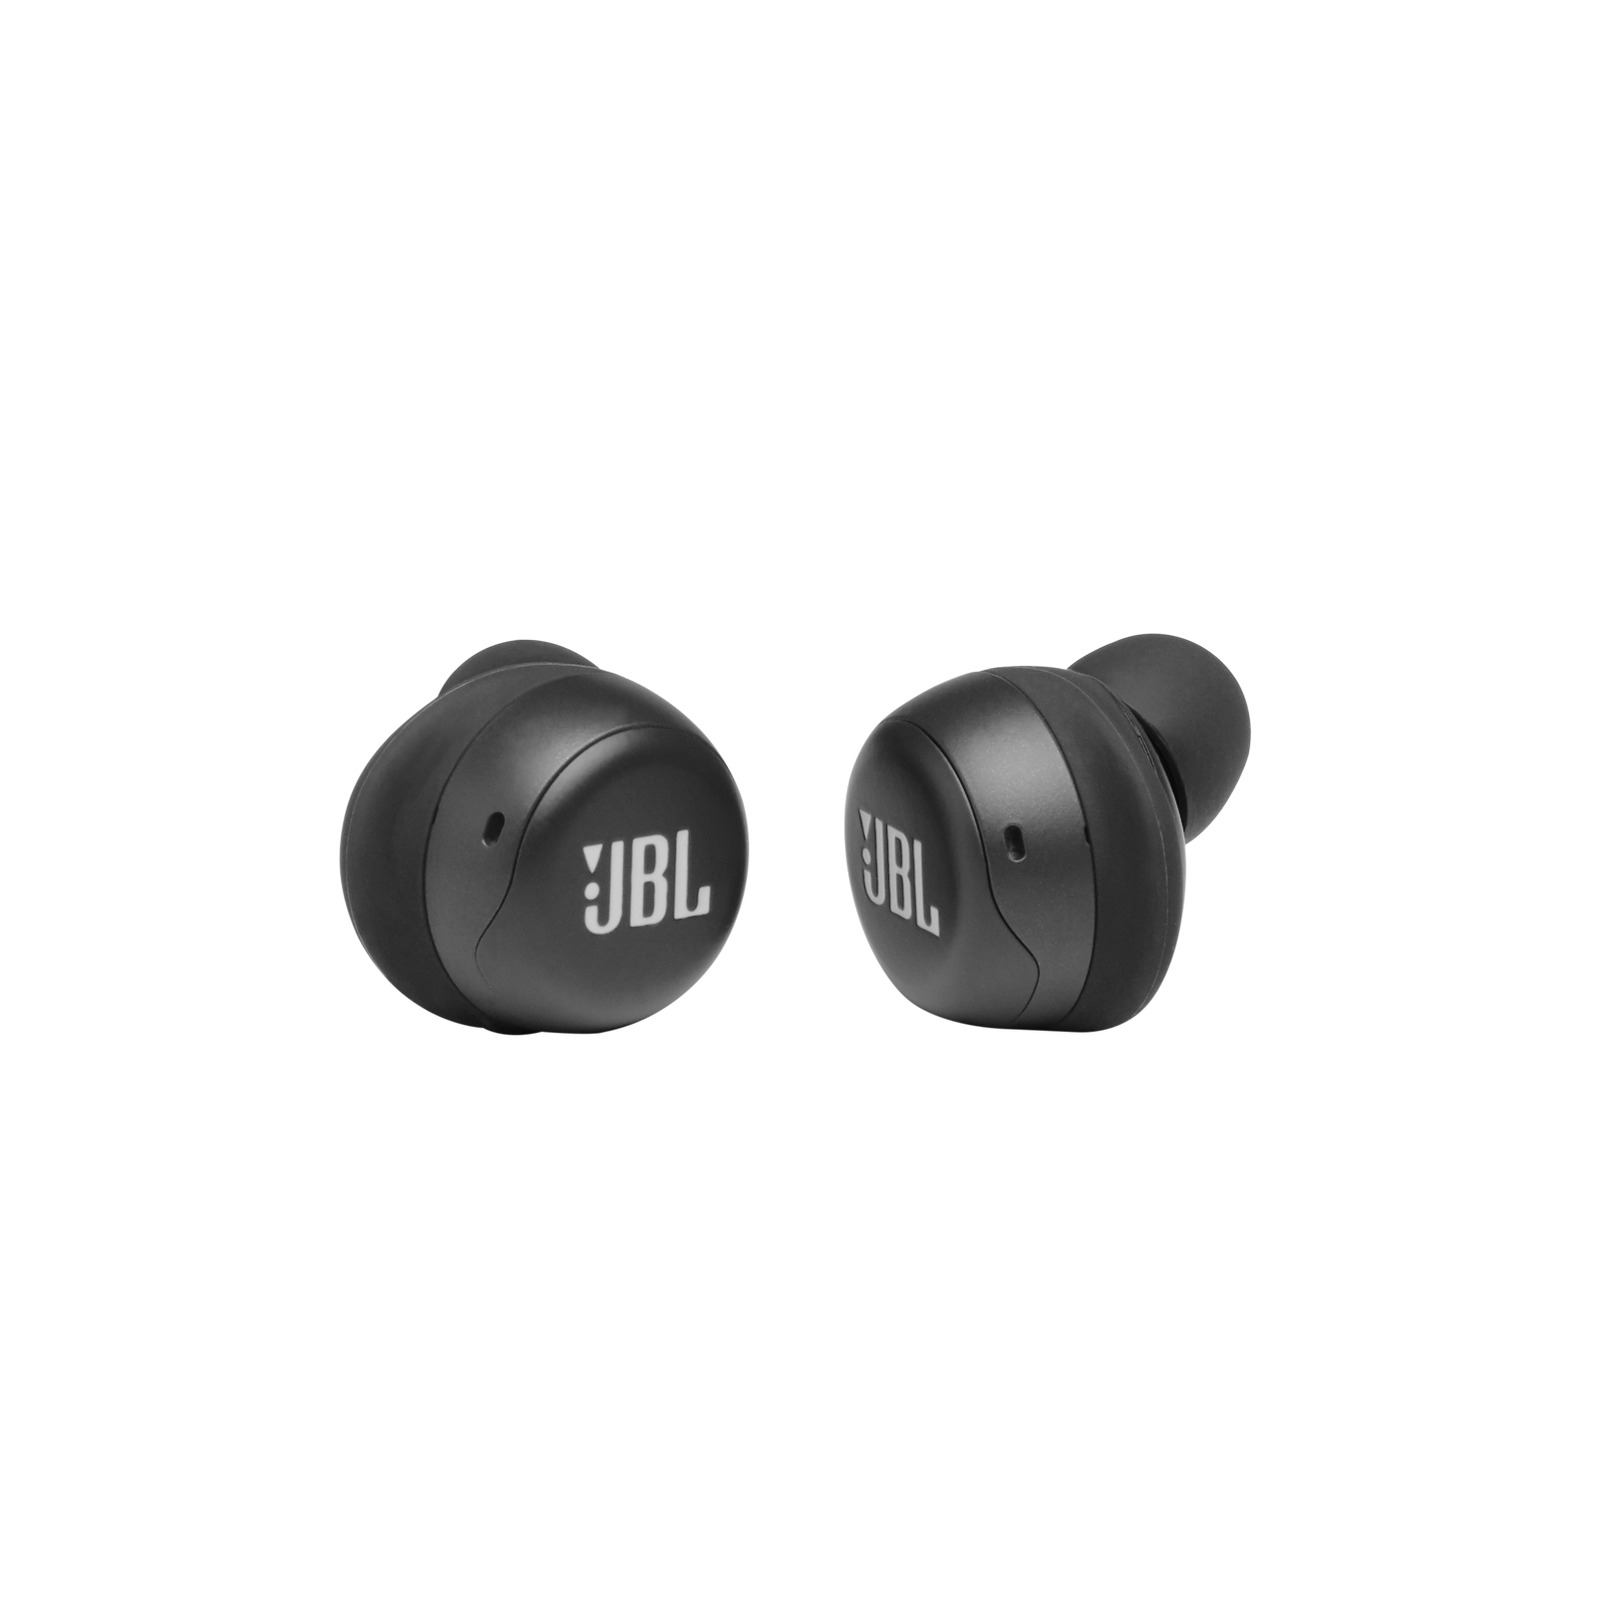 Sweat-proof JBL True Wireless Earbuds